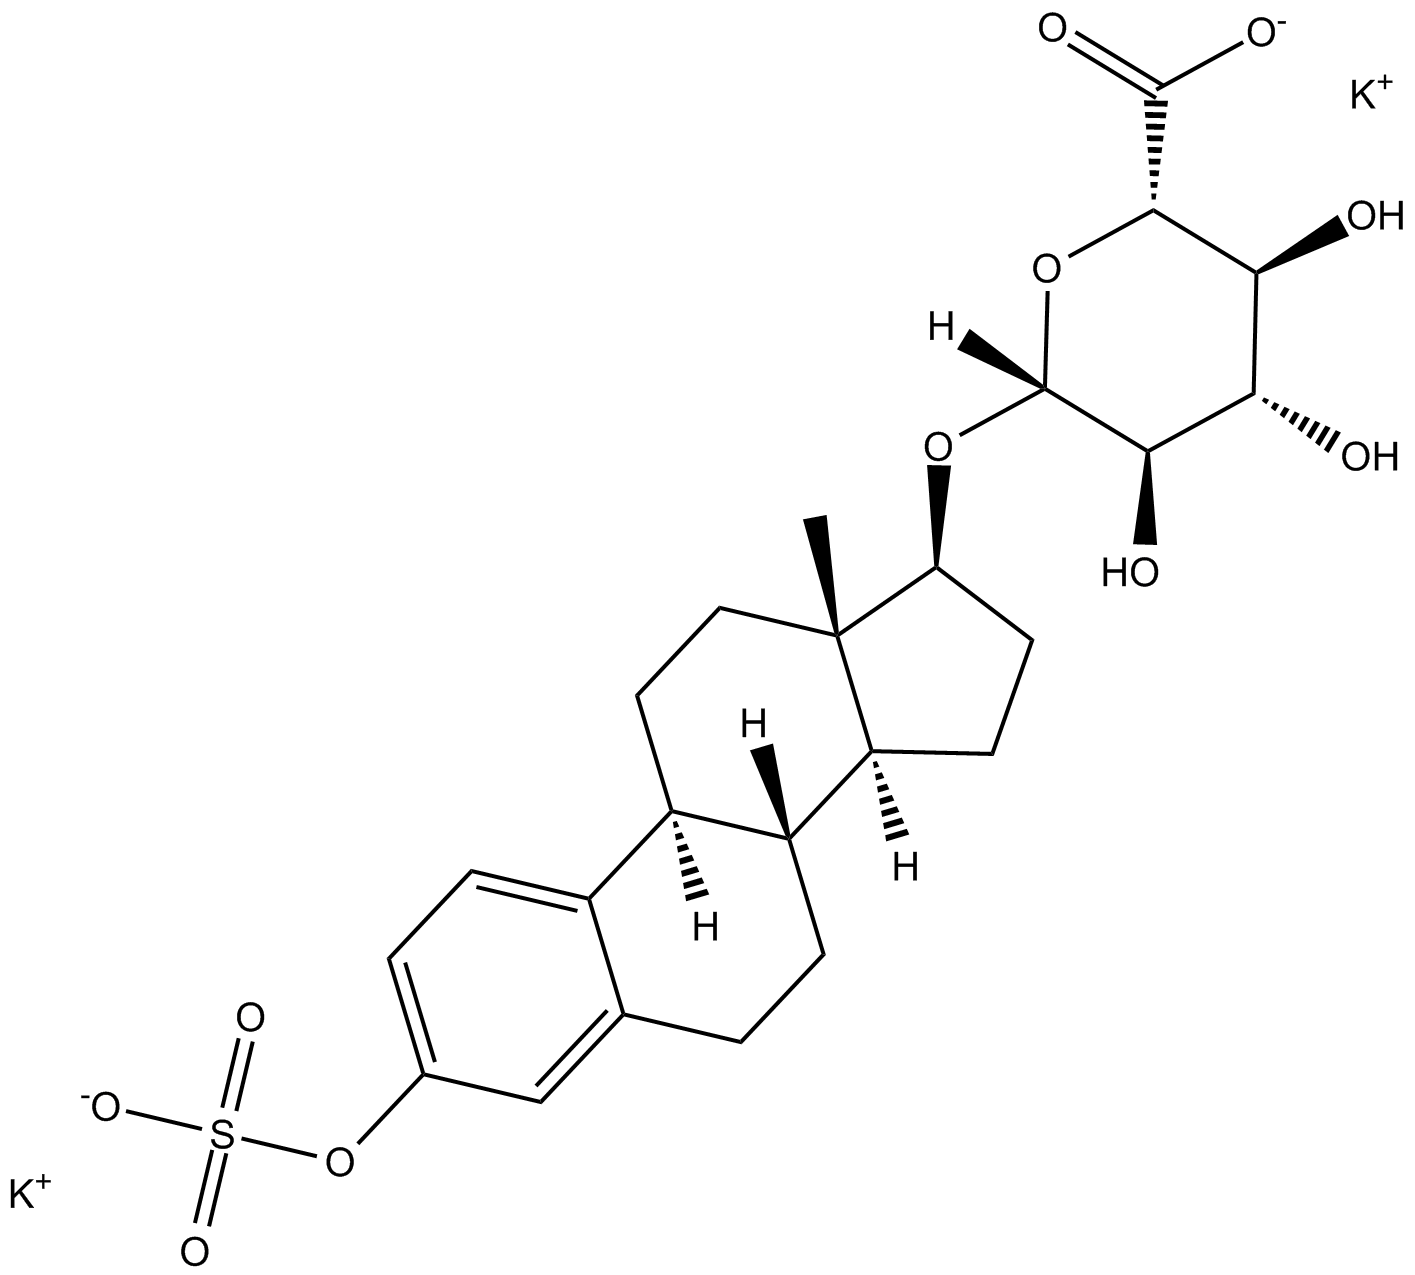 Estradiol 3-sulfate 17β-Glucuronide (potassium salt)